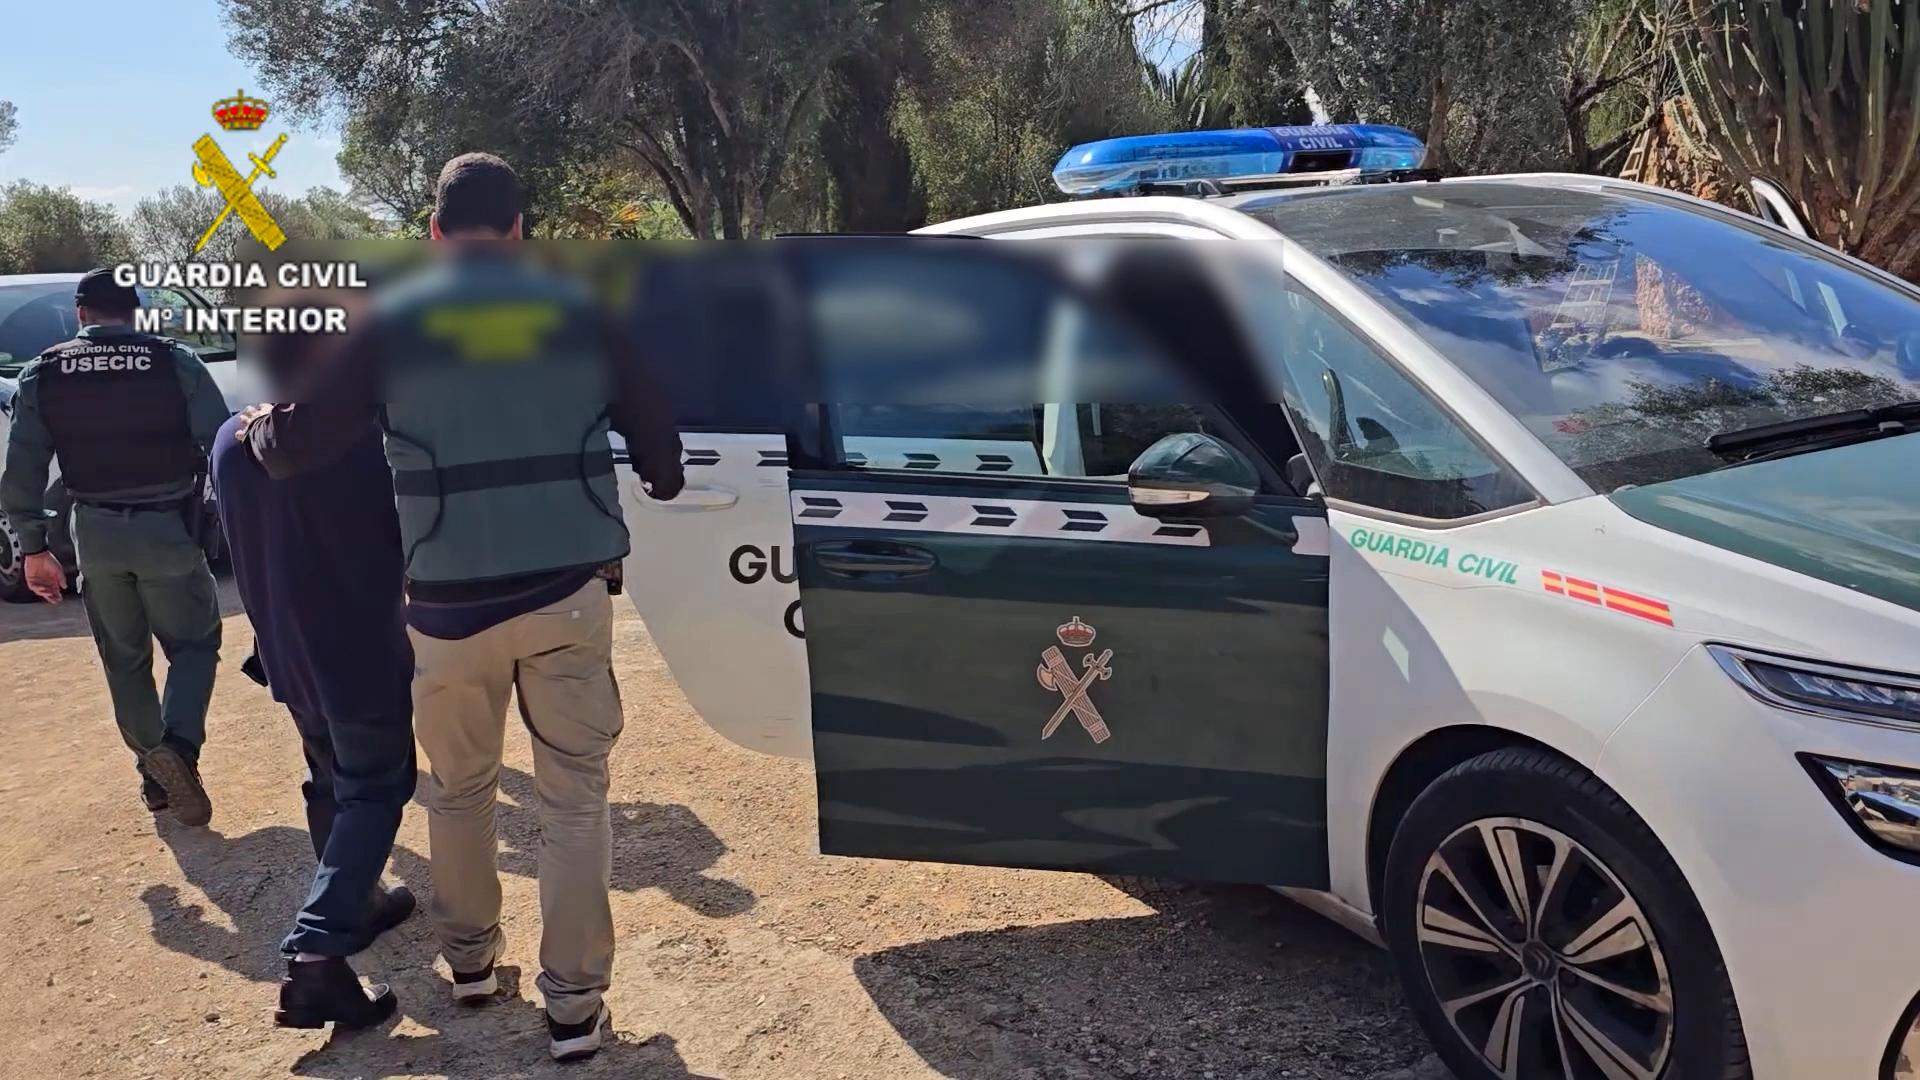 Agentes de la Guardia Civil trasladan al detenido hasta el vehículo policial